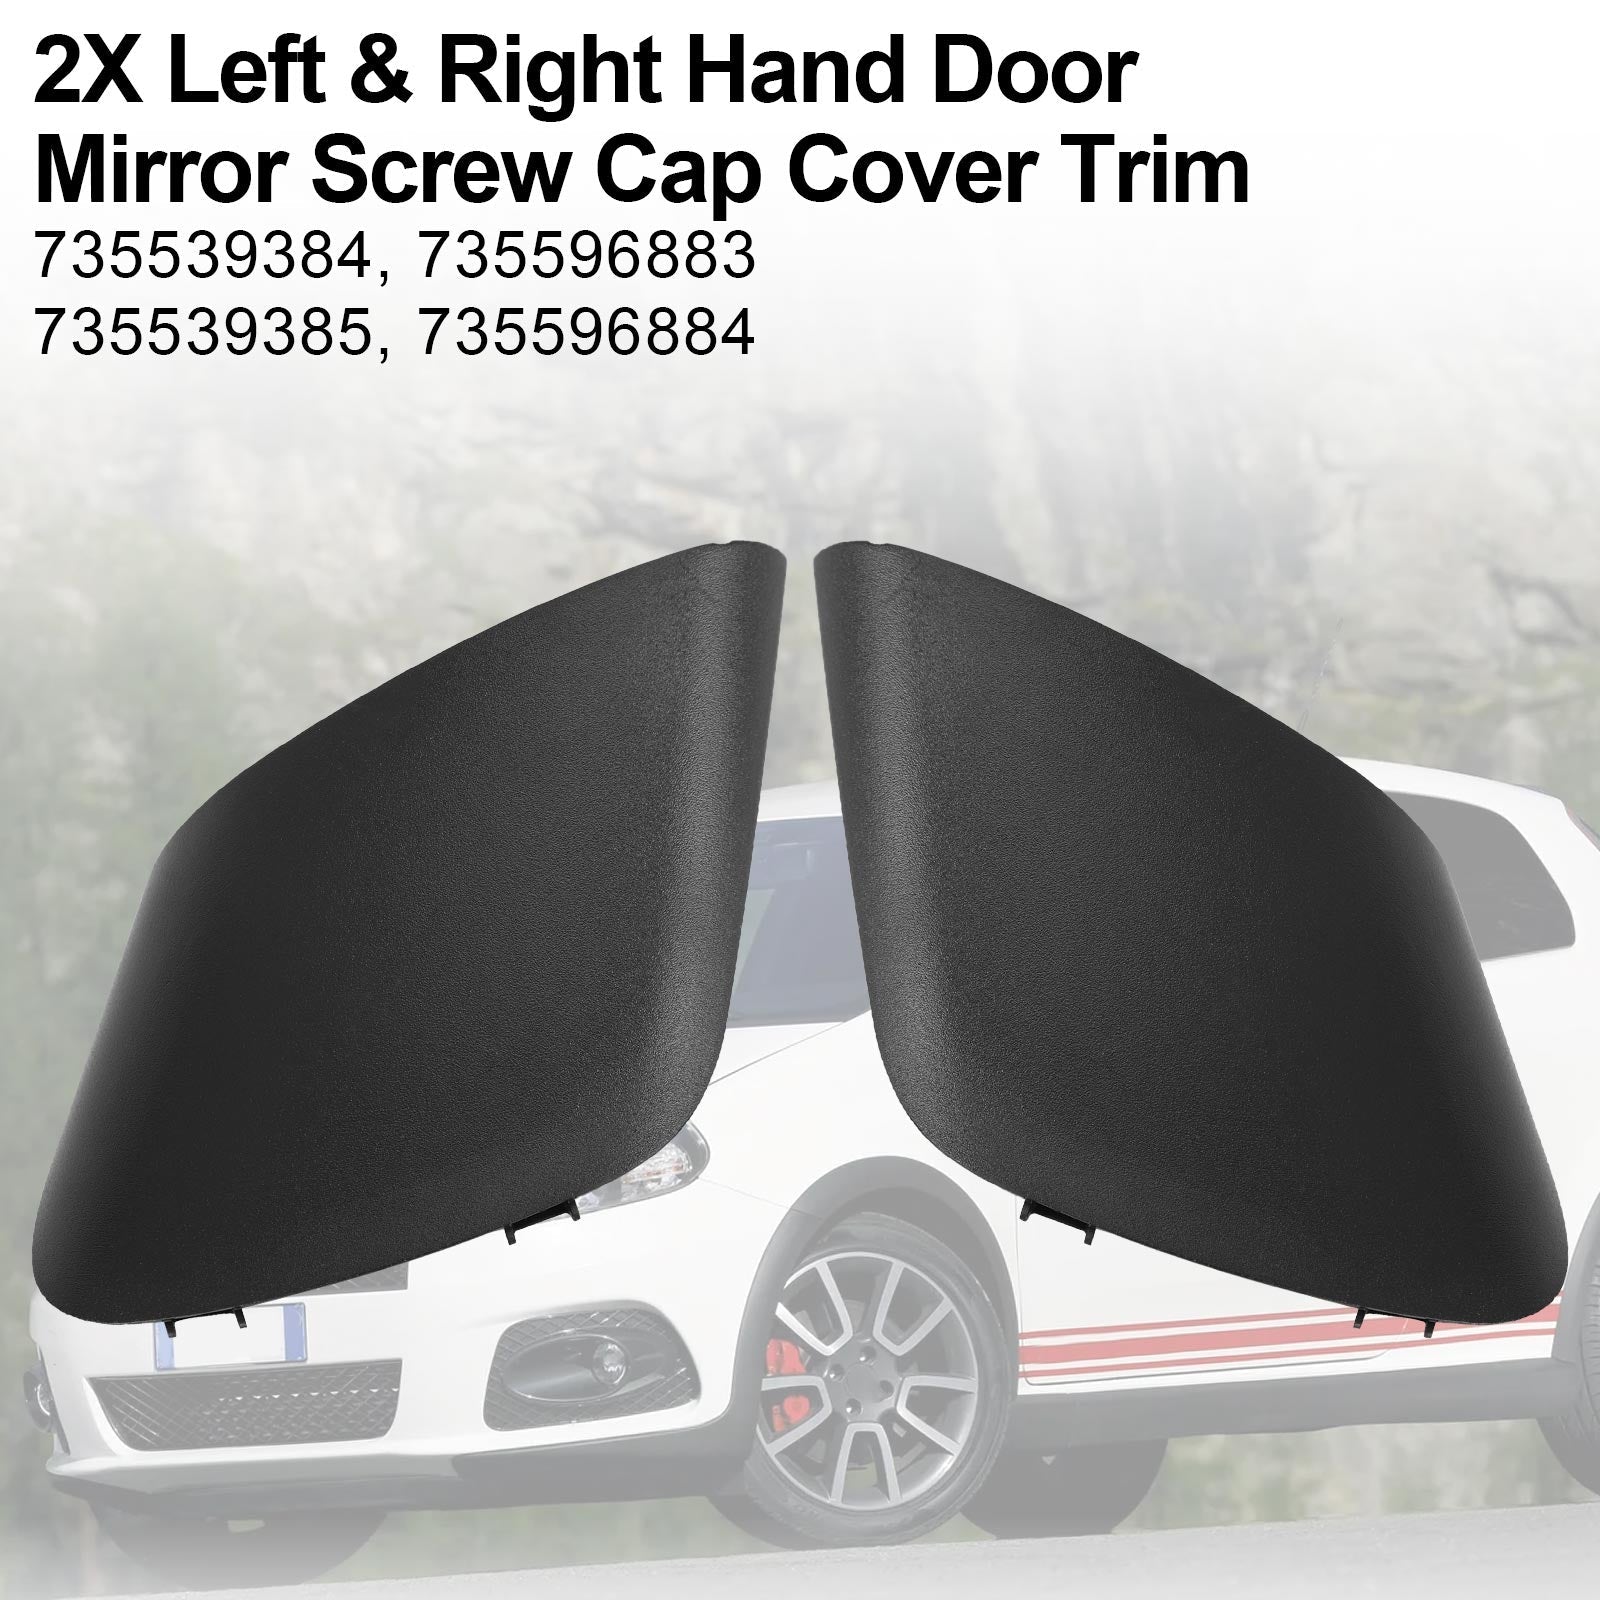 2X Left & Right Hand Door Mirror Screw Cap Cover Trim For Fiat Grande Punto Generic